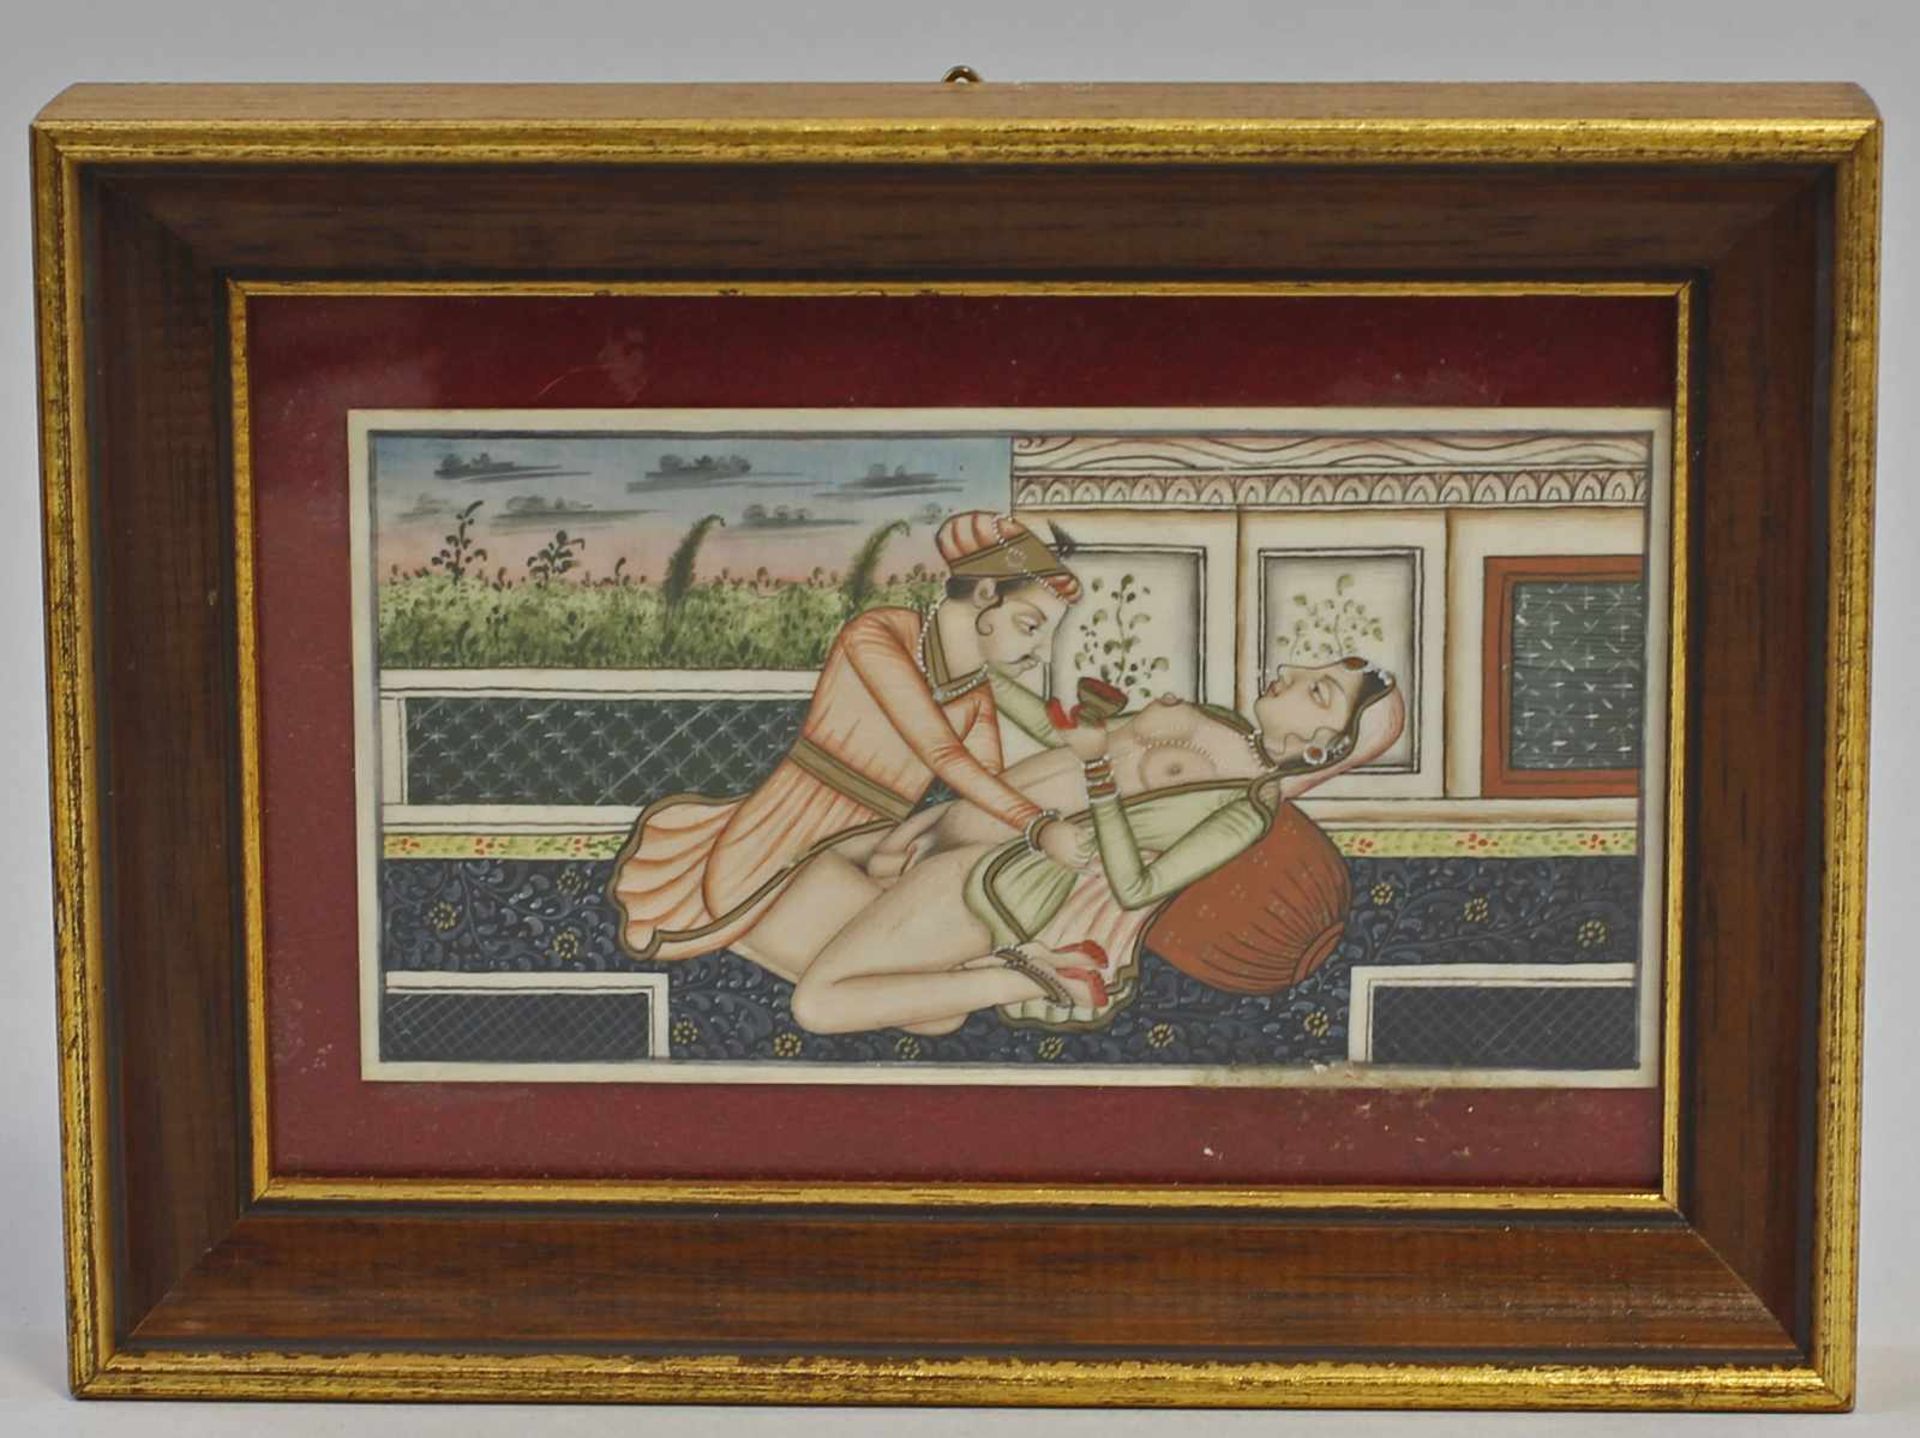 Erotische Miniatur Indien: wohl 19. Jh. (?), Miniaturenmalerei im indo-persischen Moghul-Stil,